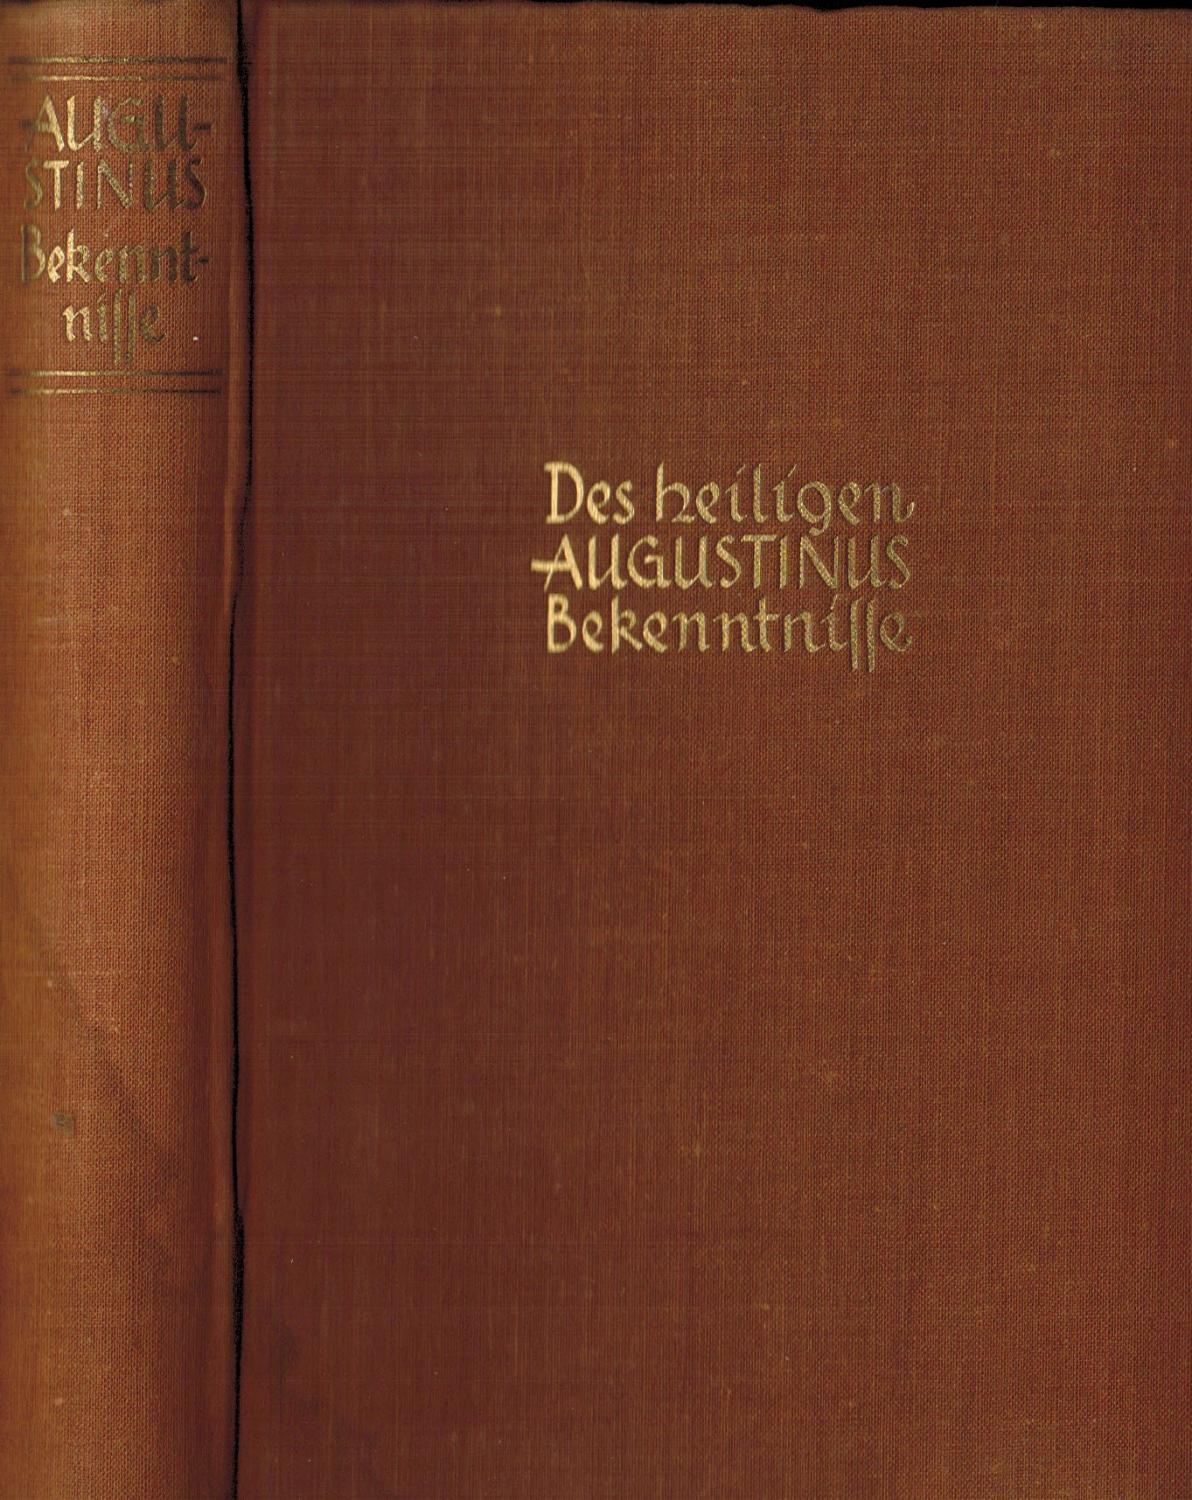 Die Bekenntnisse des heiligen Augustinus Buch I - X. Ins Deutsche übersetzt und mit einer Einleitung versehen